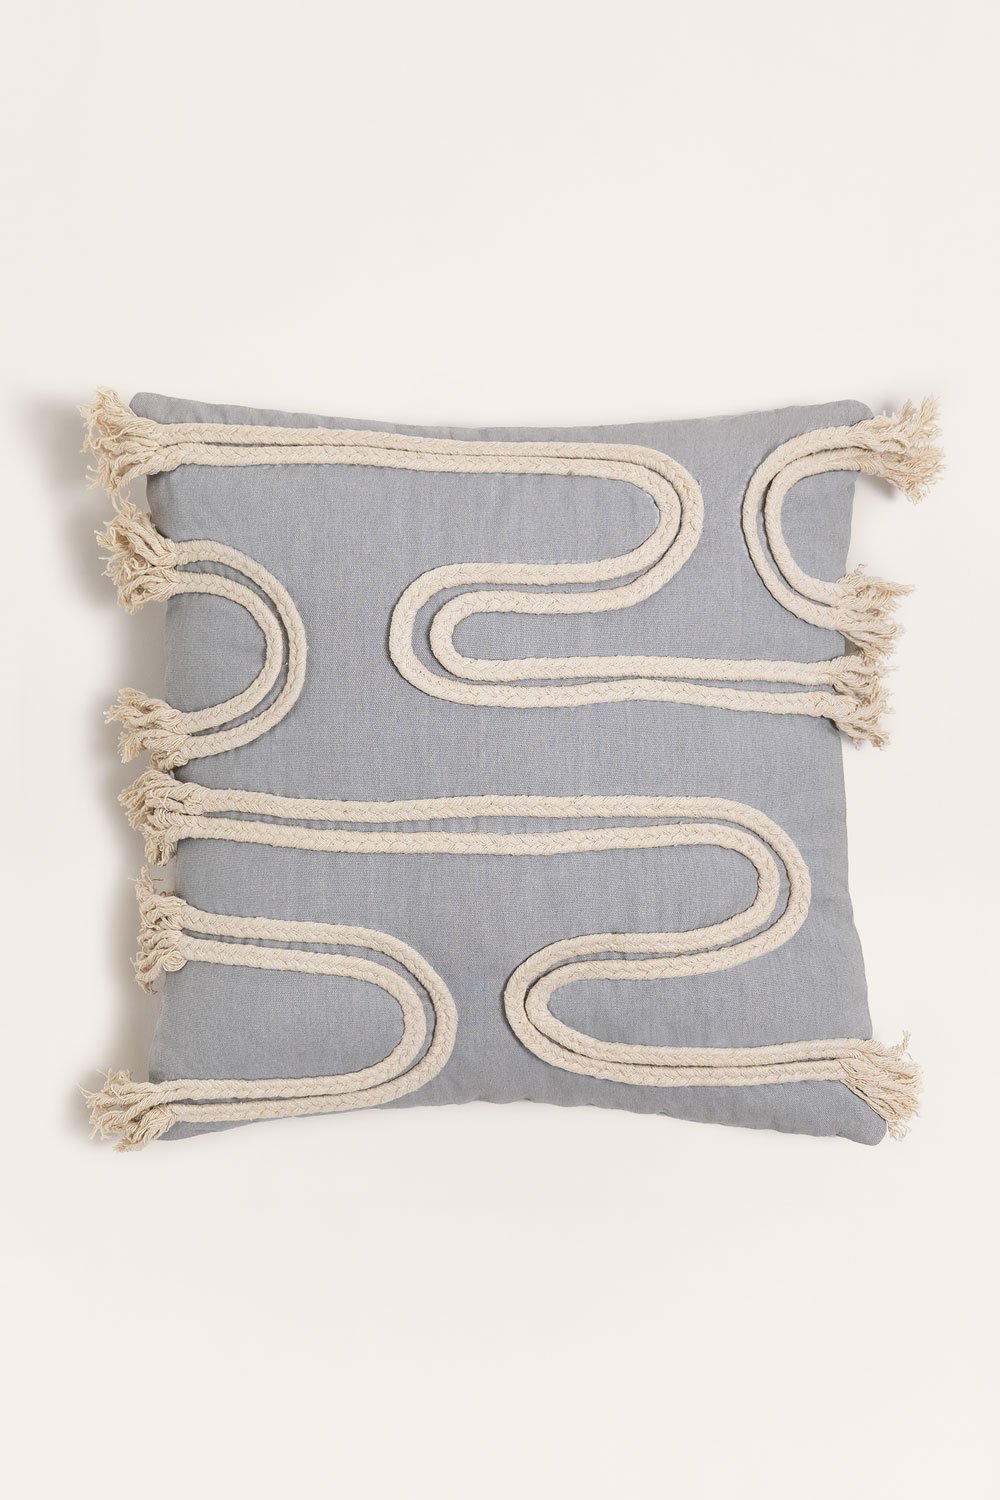 Kwadratowa poduszka z bawełny (45x45 cm) Reni, obrazek w galerii 1